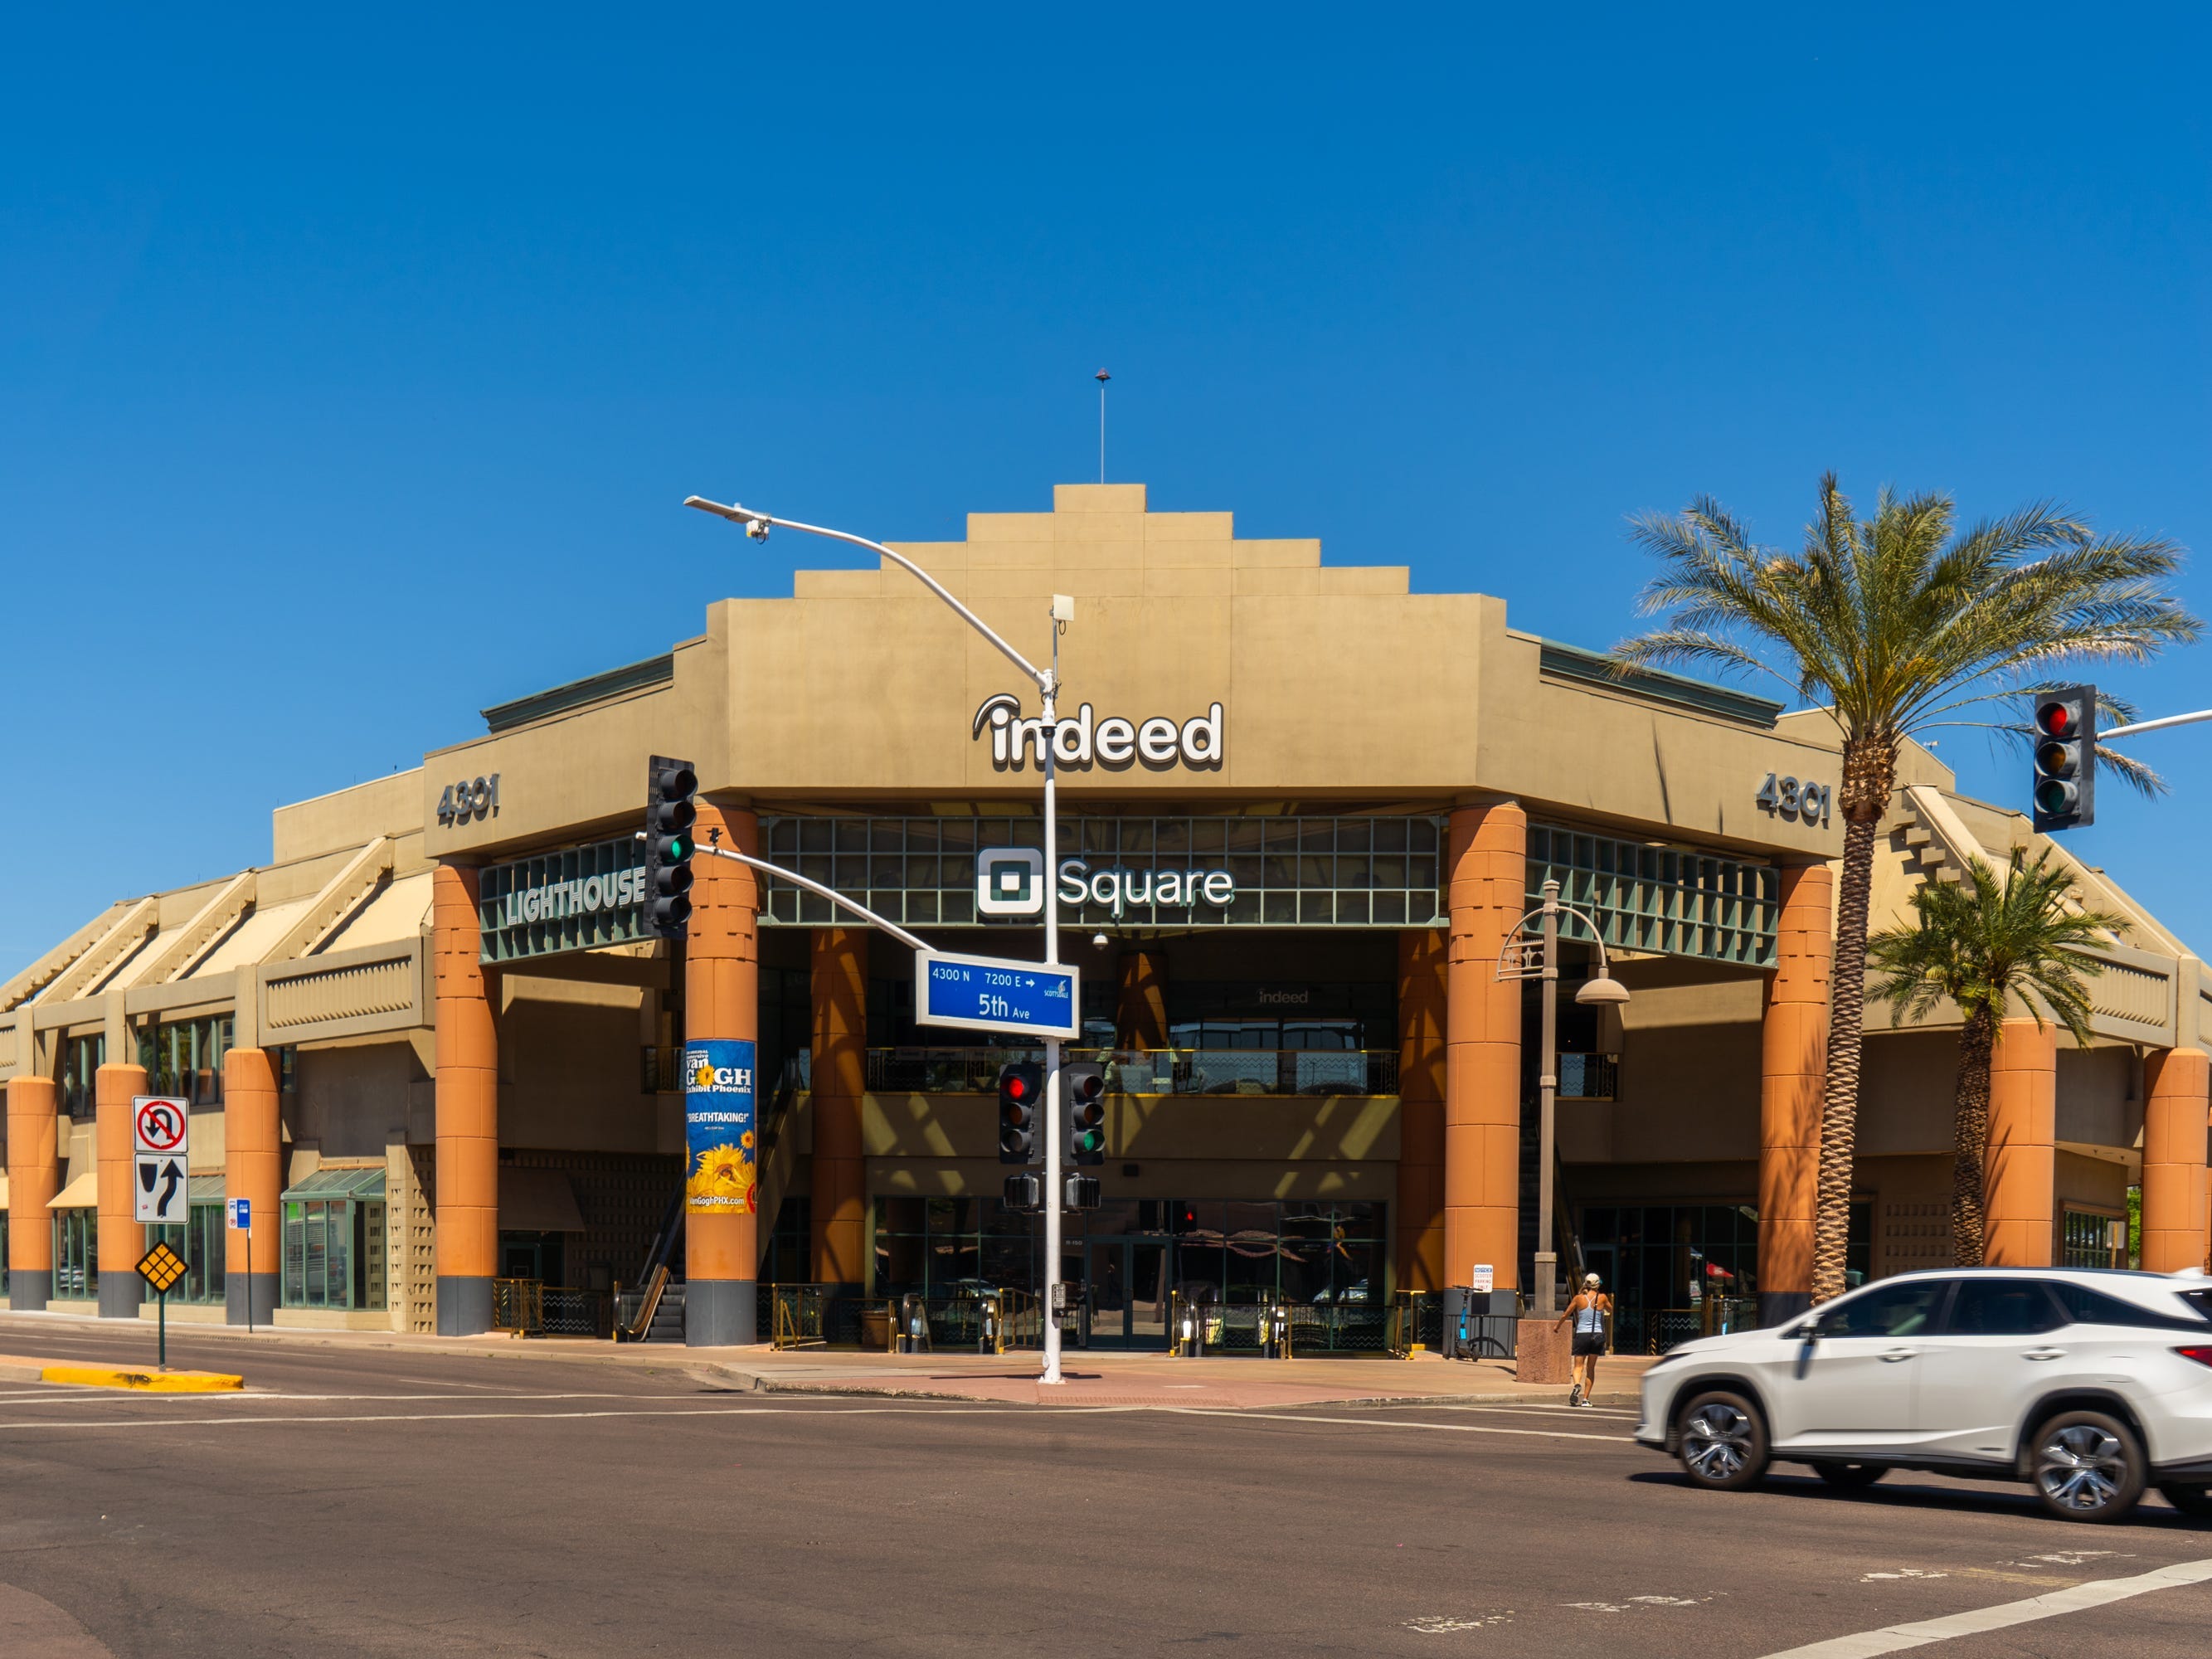 Ein Geschäftsgebäude aus Lehmziegeln an einer Kreuzung an einem Tag mit strahlend blauem Himmel